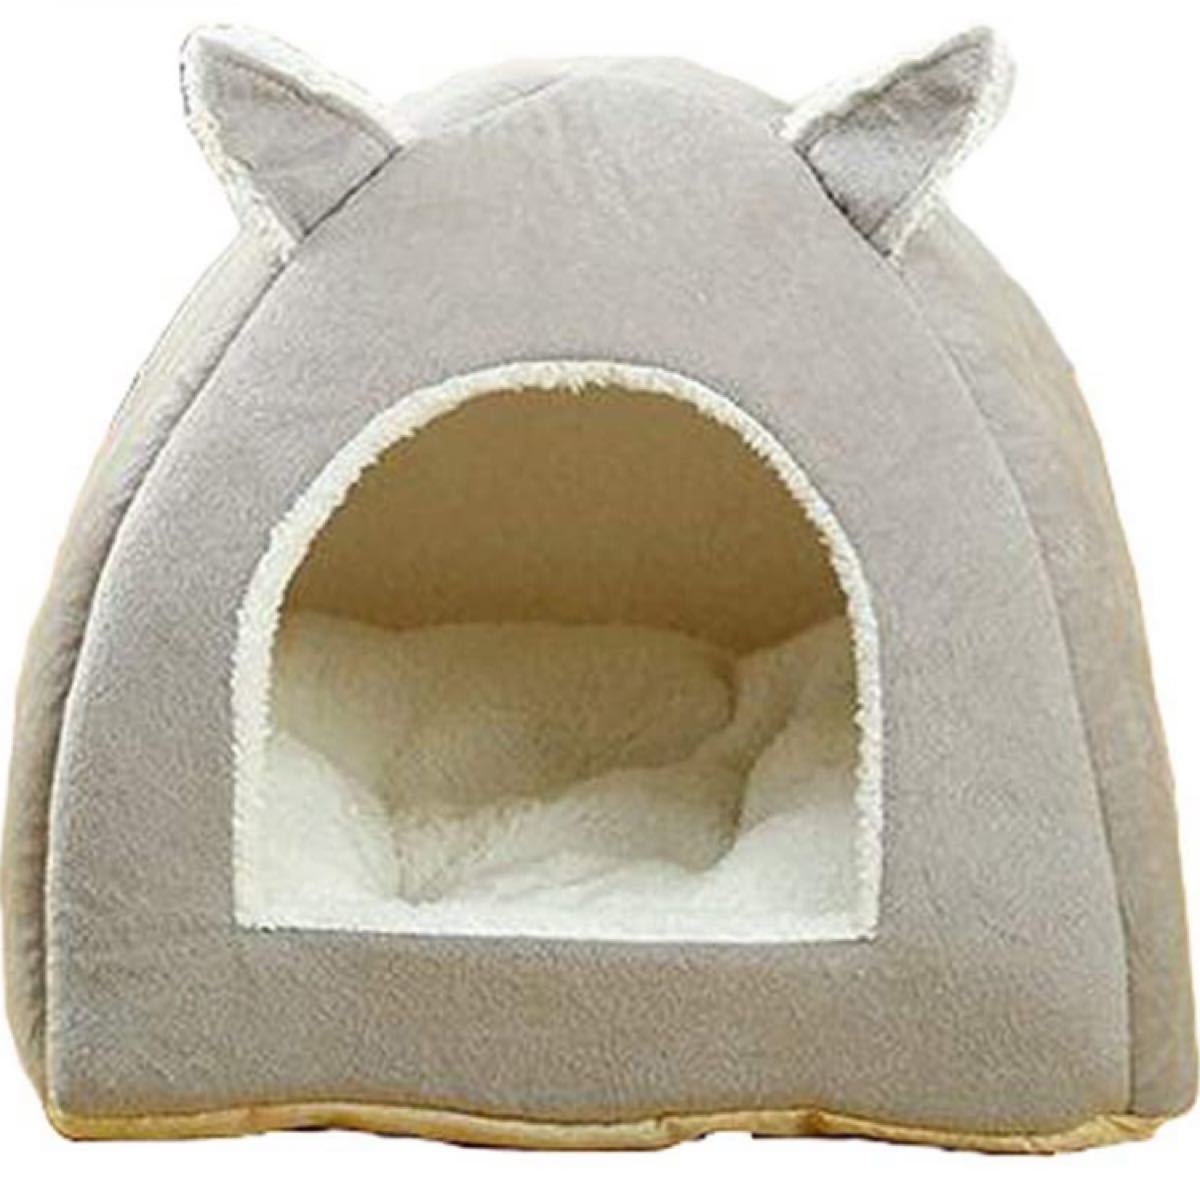 ペットハウス ドーム 犬ハウス 犬用 ハウス 小型犬 猫 猫ベッド 犬ベッド ペット用